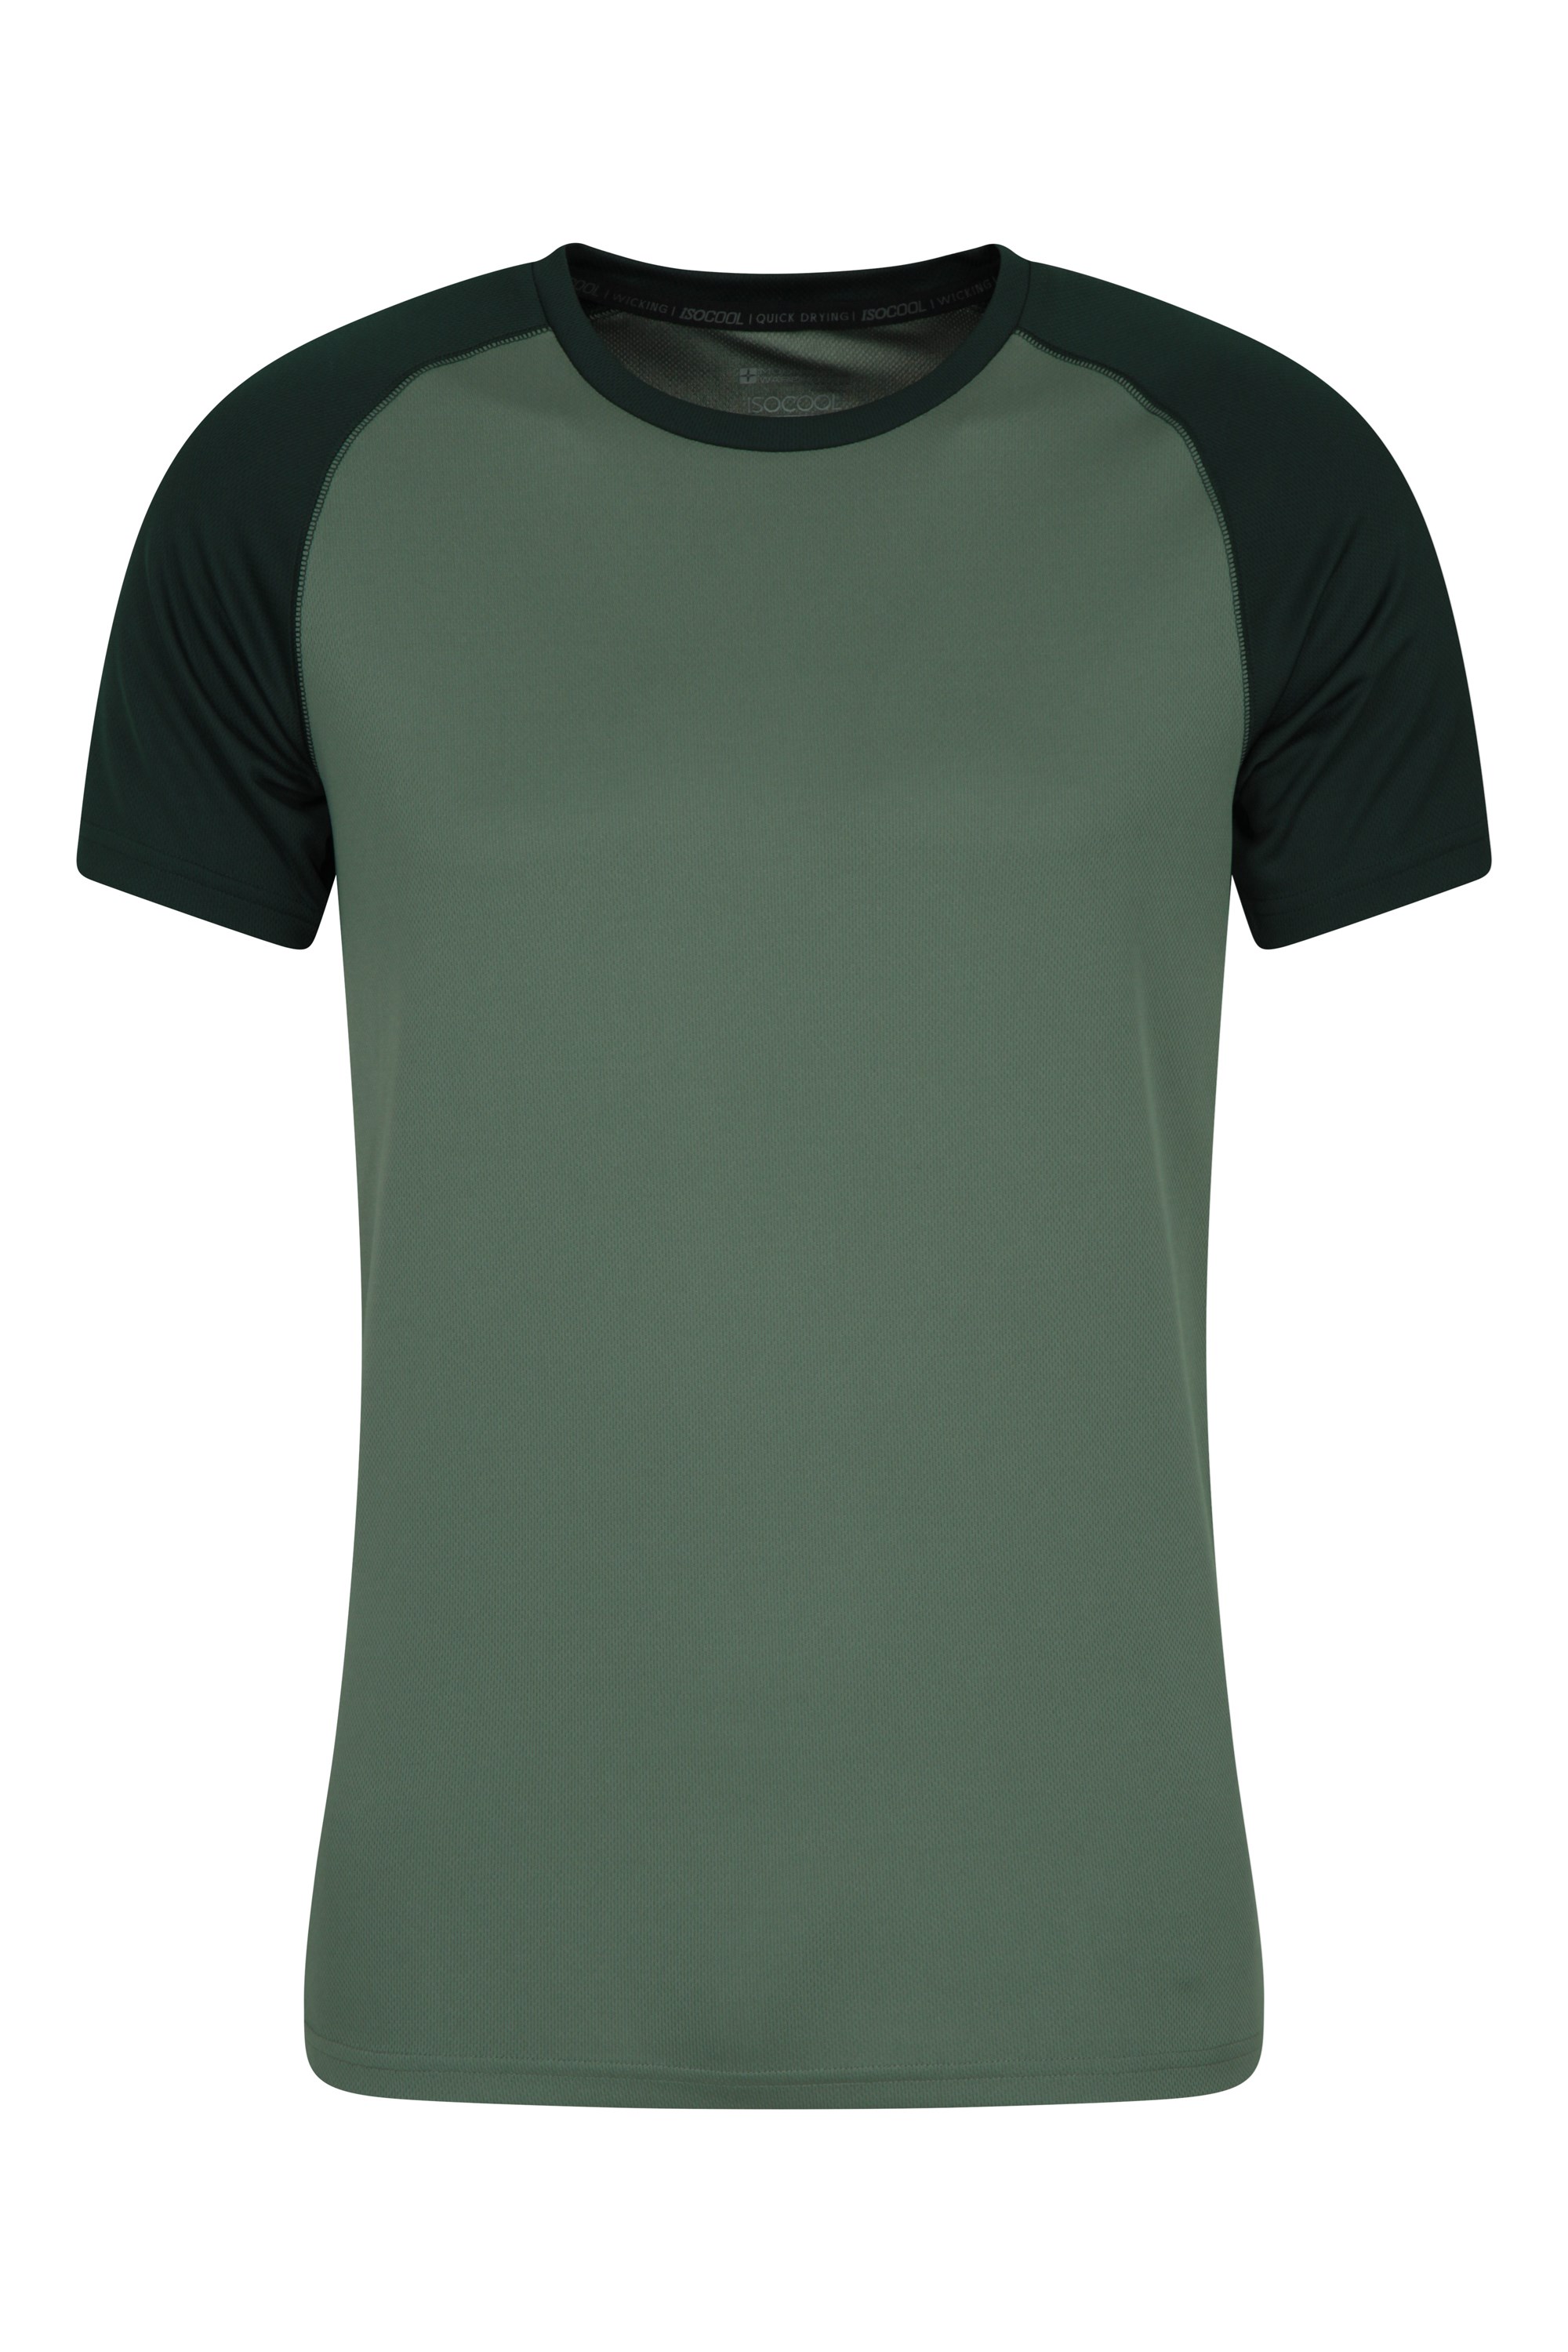 T-shirt hommes Endurance - Vert